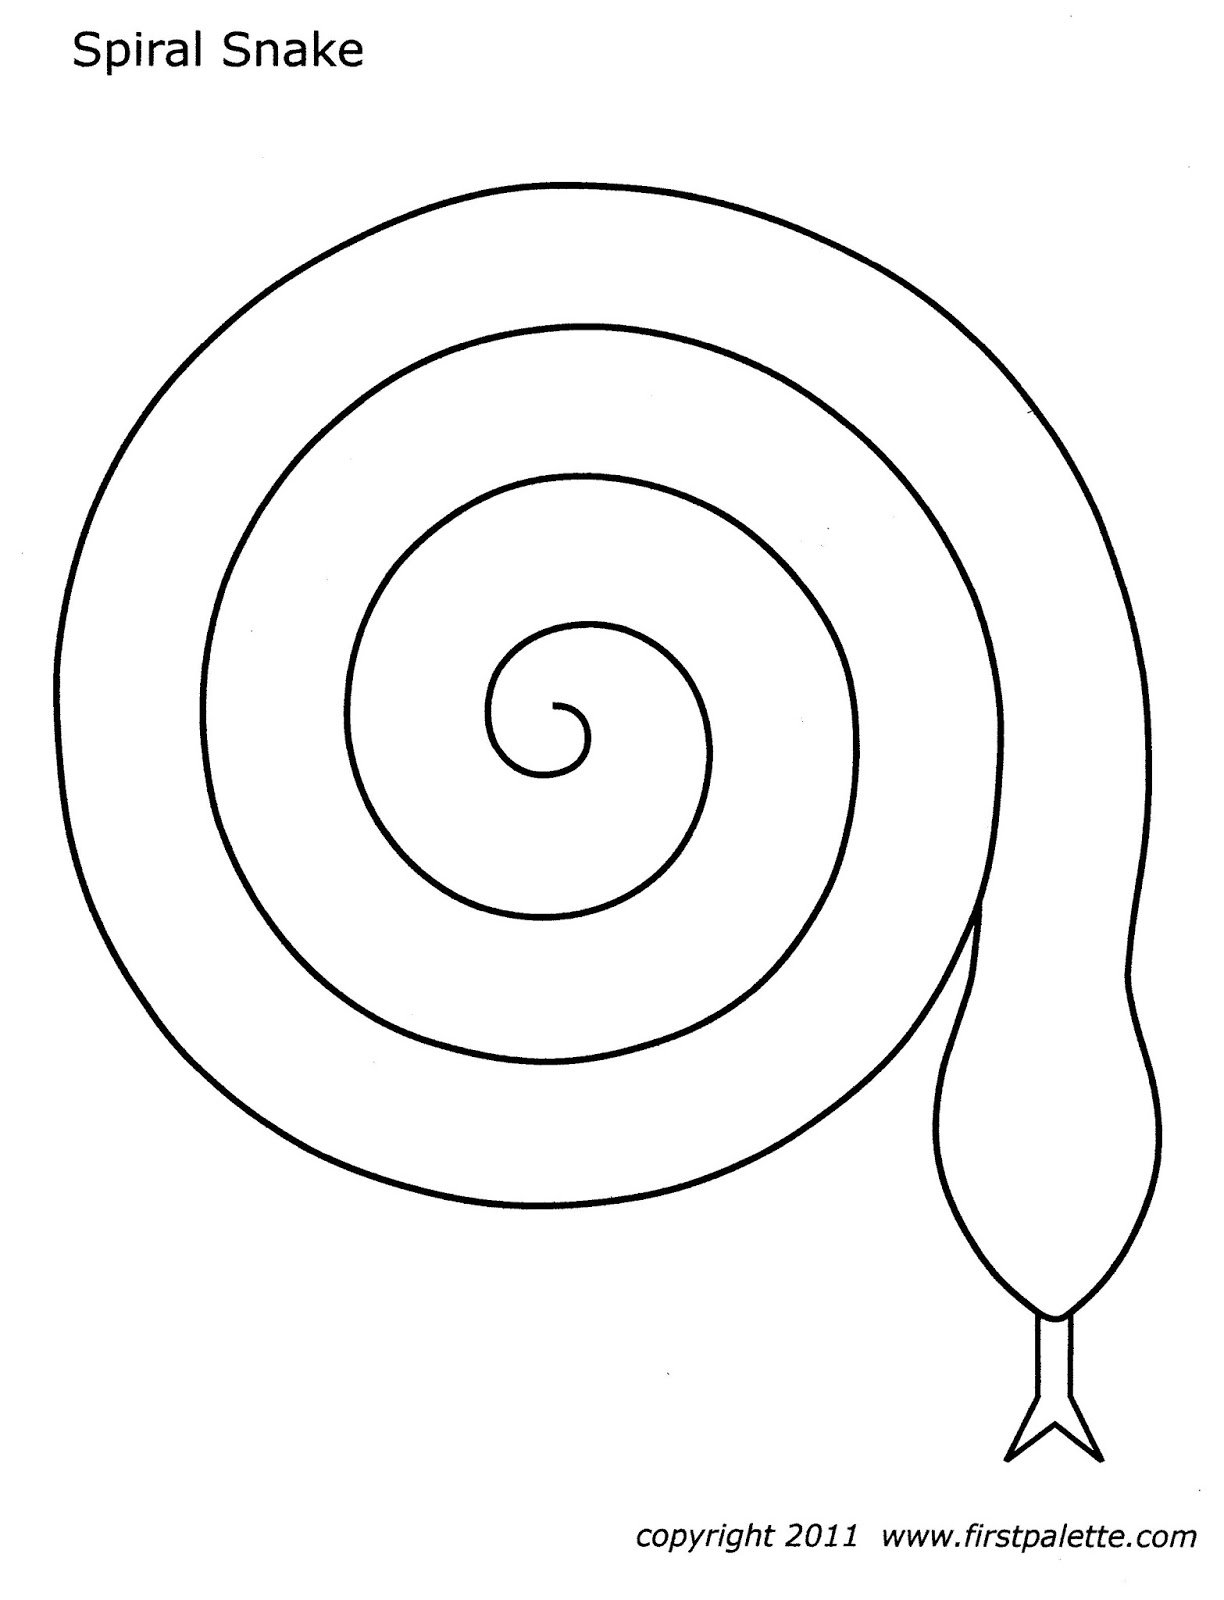 Children's spiral #22